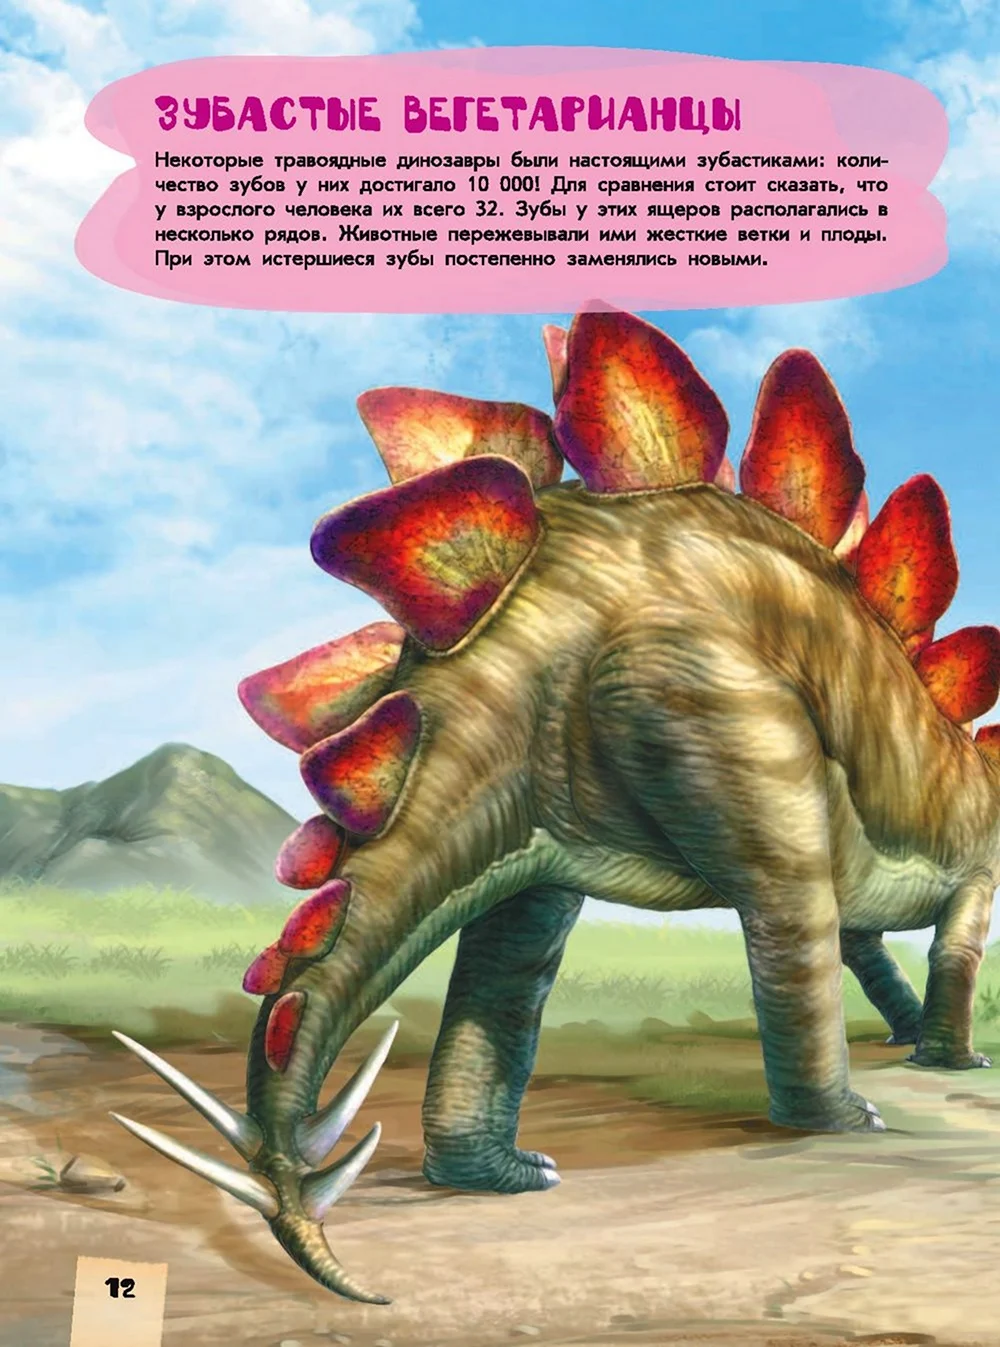 Травоядные динозавры для детей